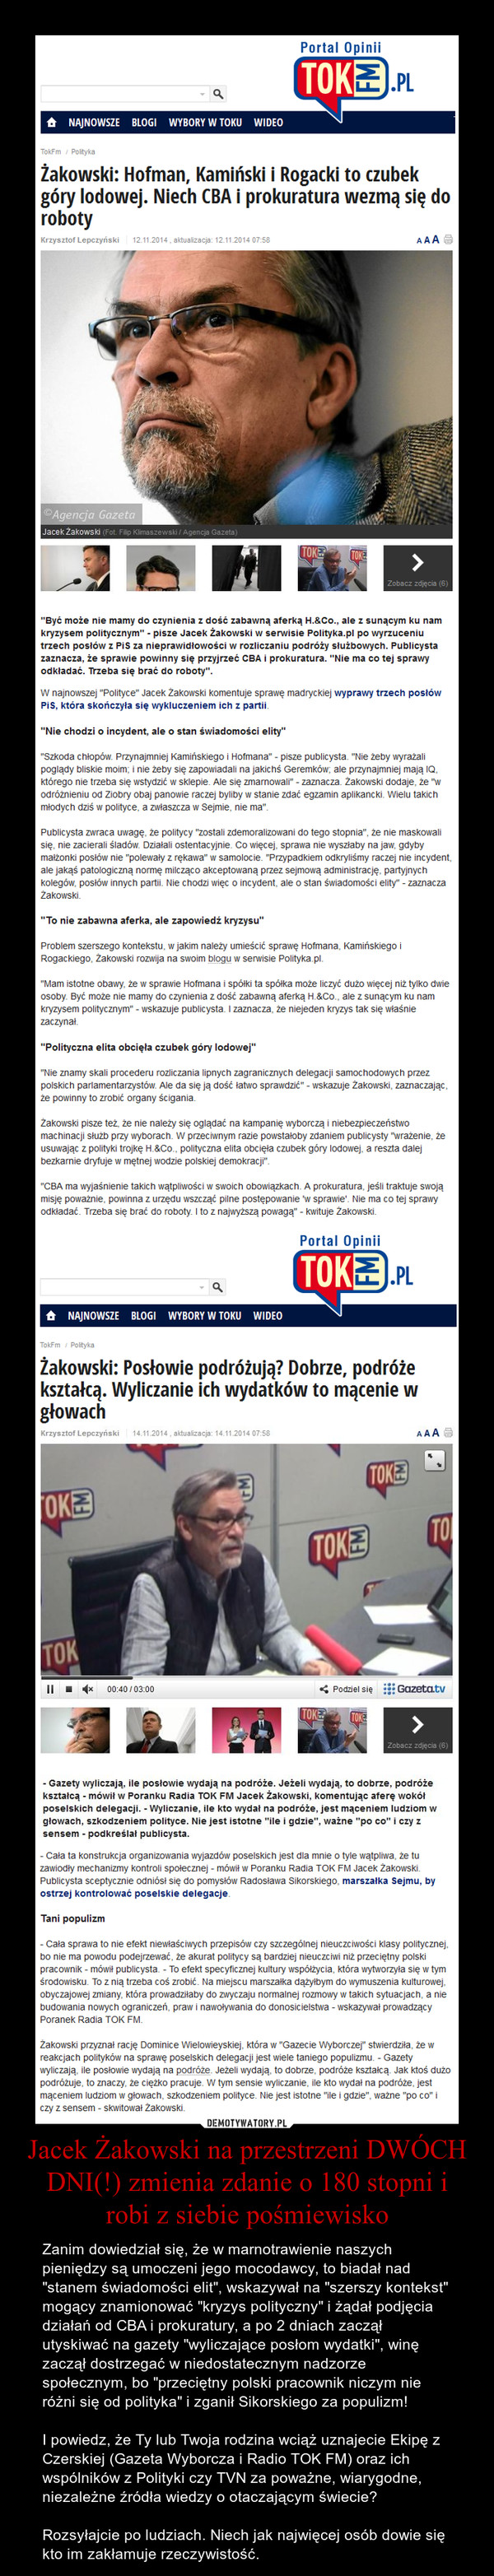 Jacek Żakowski na przestrzeni DWÓCH DNI(!) zmienia zdanie o 180 stopni i robi z siebie pośmiewisko